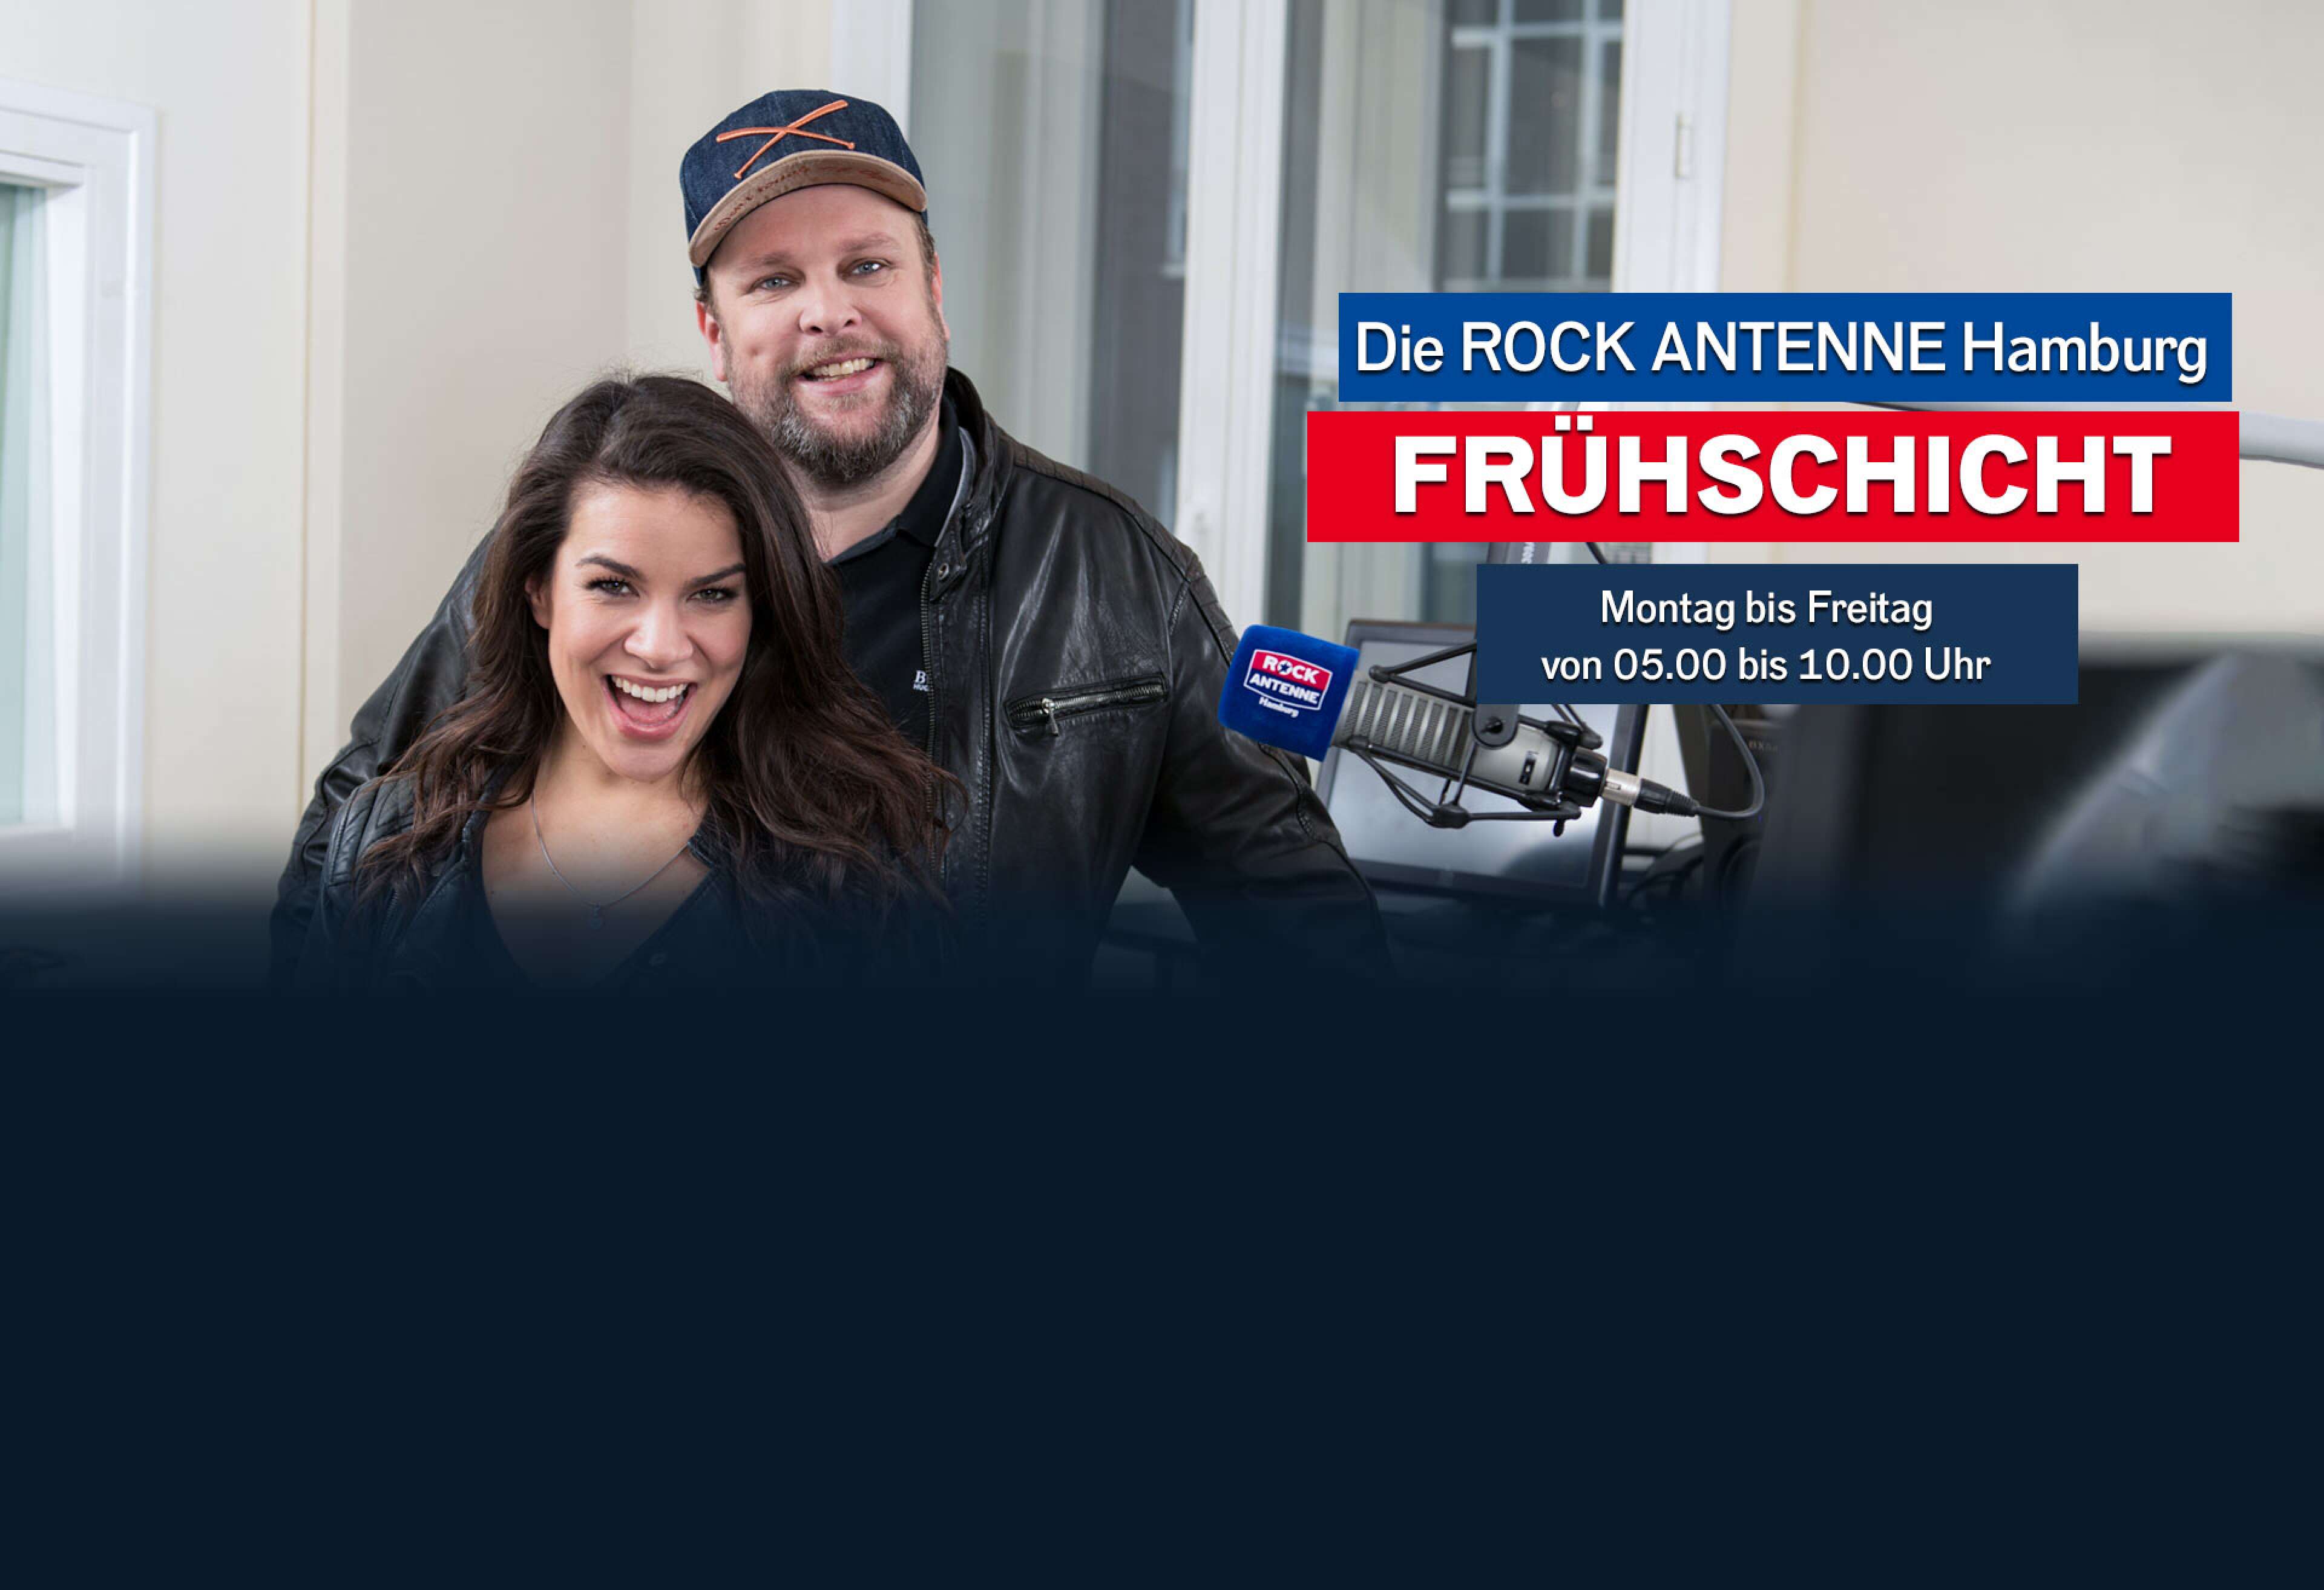 Lilly Roberts und Alex Schmidt mit der Aufschrift "Die ROCK ANTENNE Hamburg Frühschicht - Montag bis Freitag von 05.00 bis 10.00 Uhr""